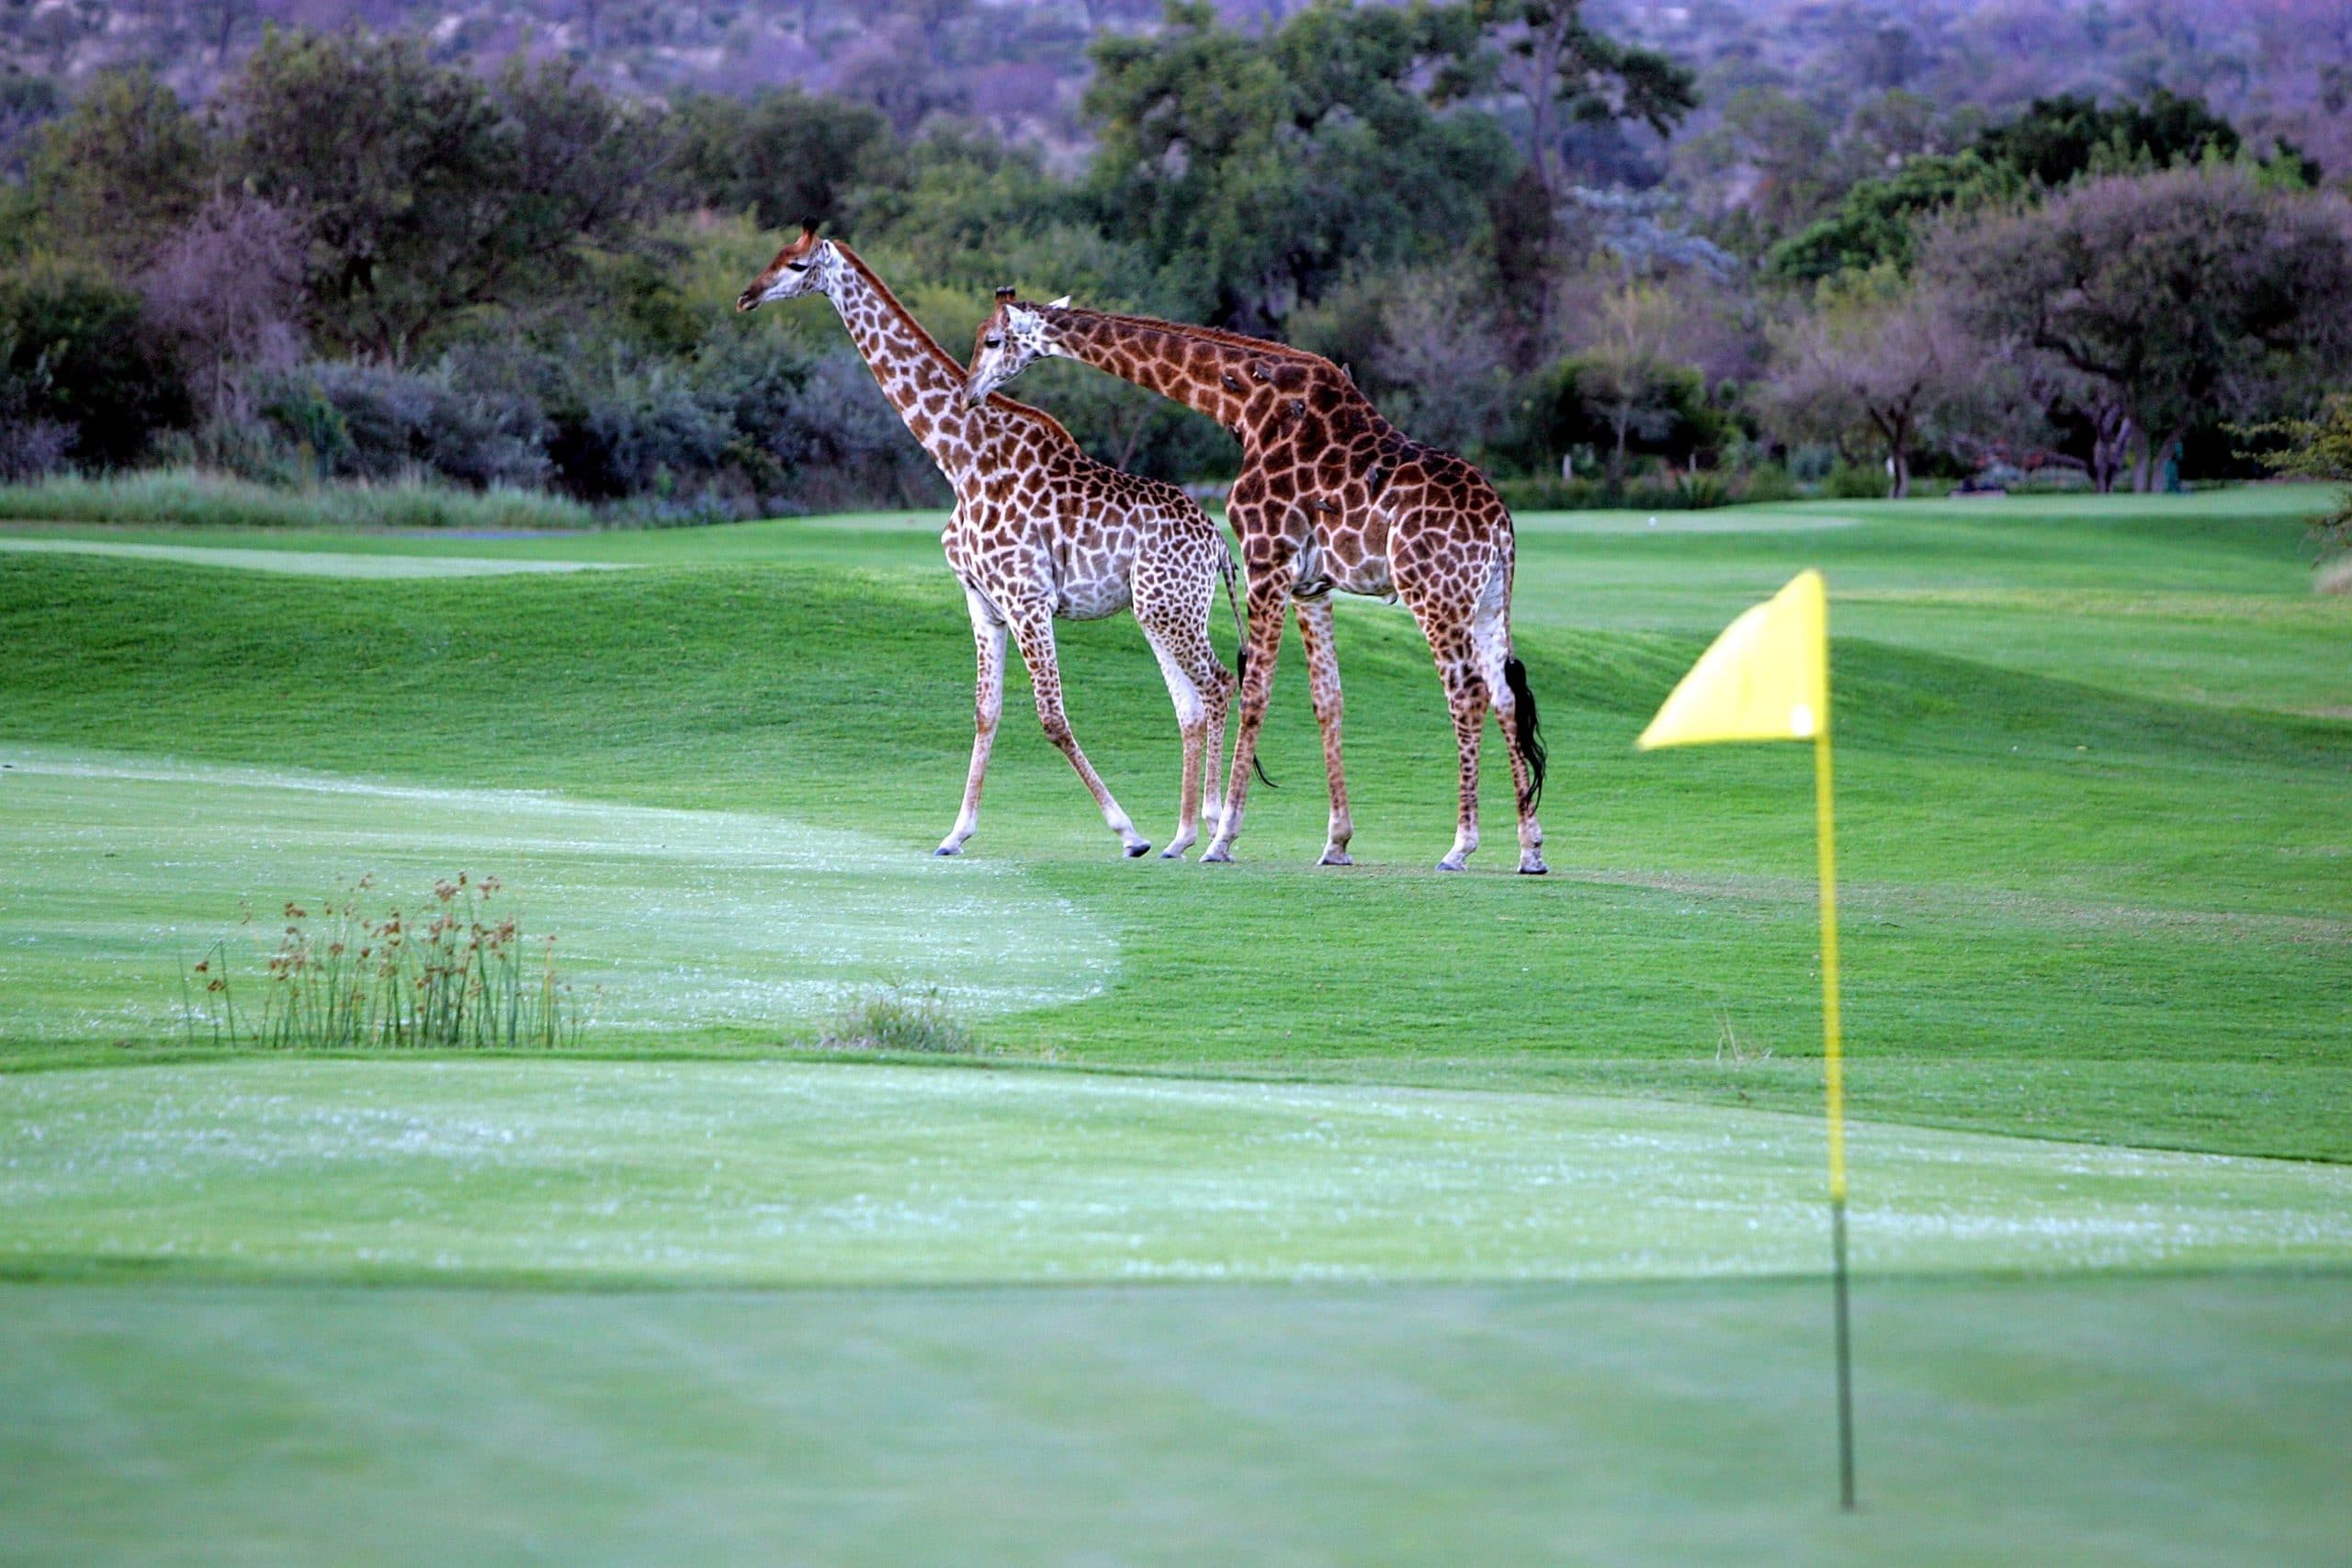 Giraffes walking on a golf course